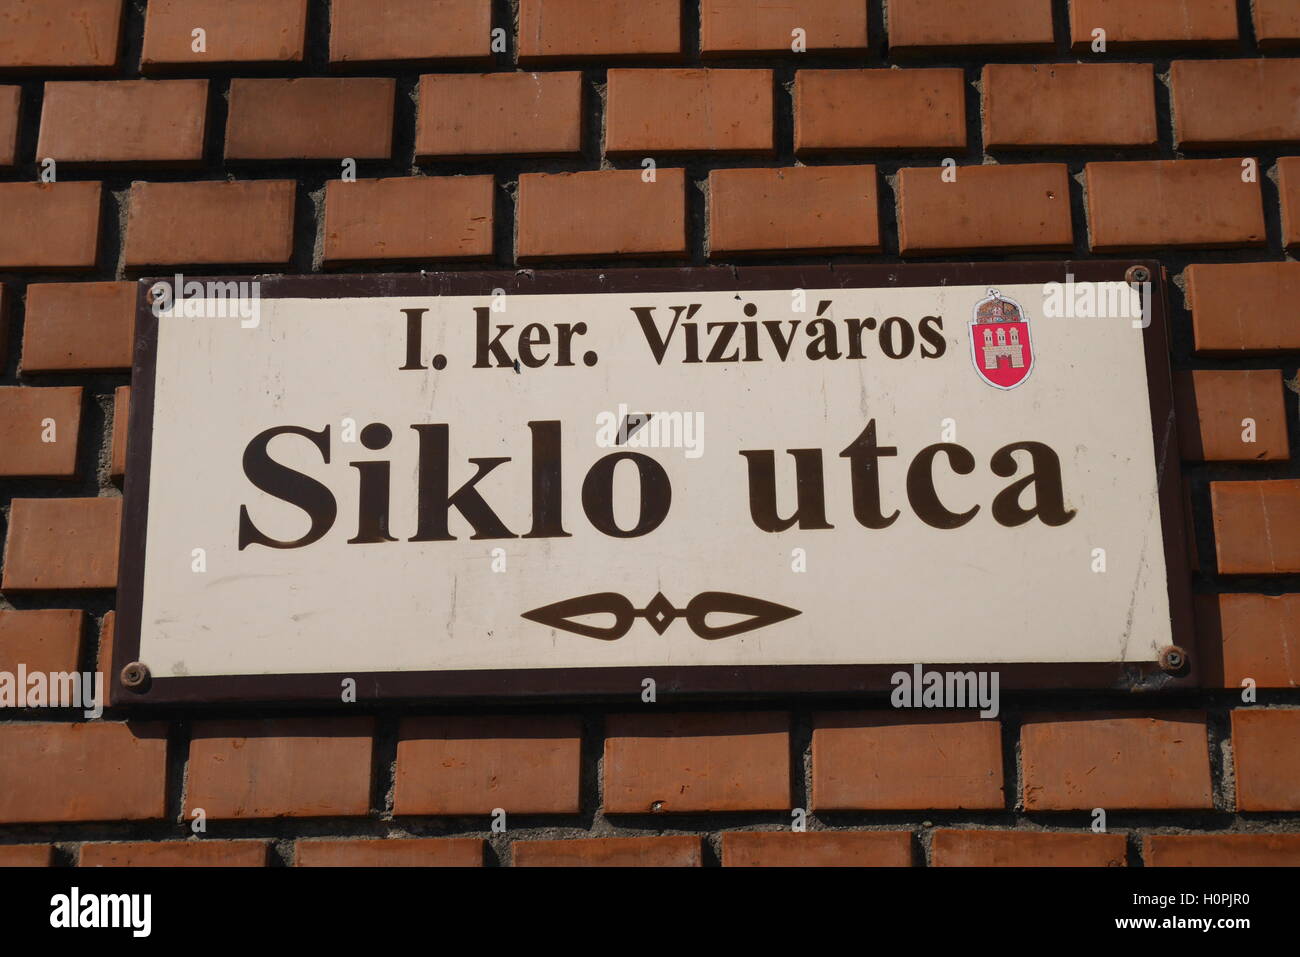 Plaque de rue, Siklo utca, dans Vizivaros (Ville de l'eau), Budapest, Hongrie Banque D'Images